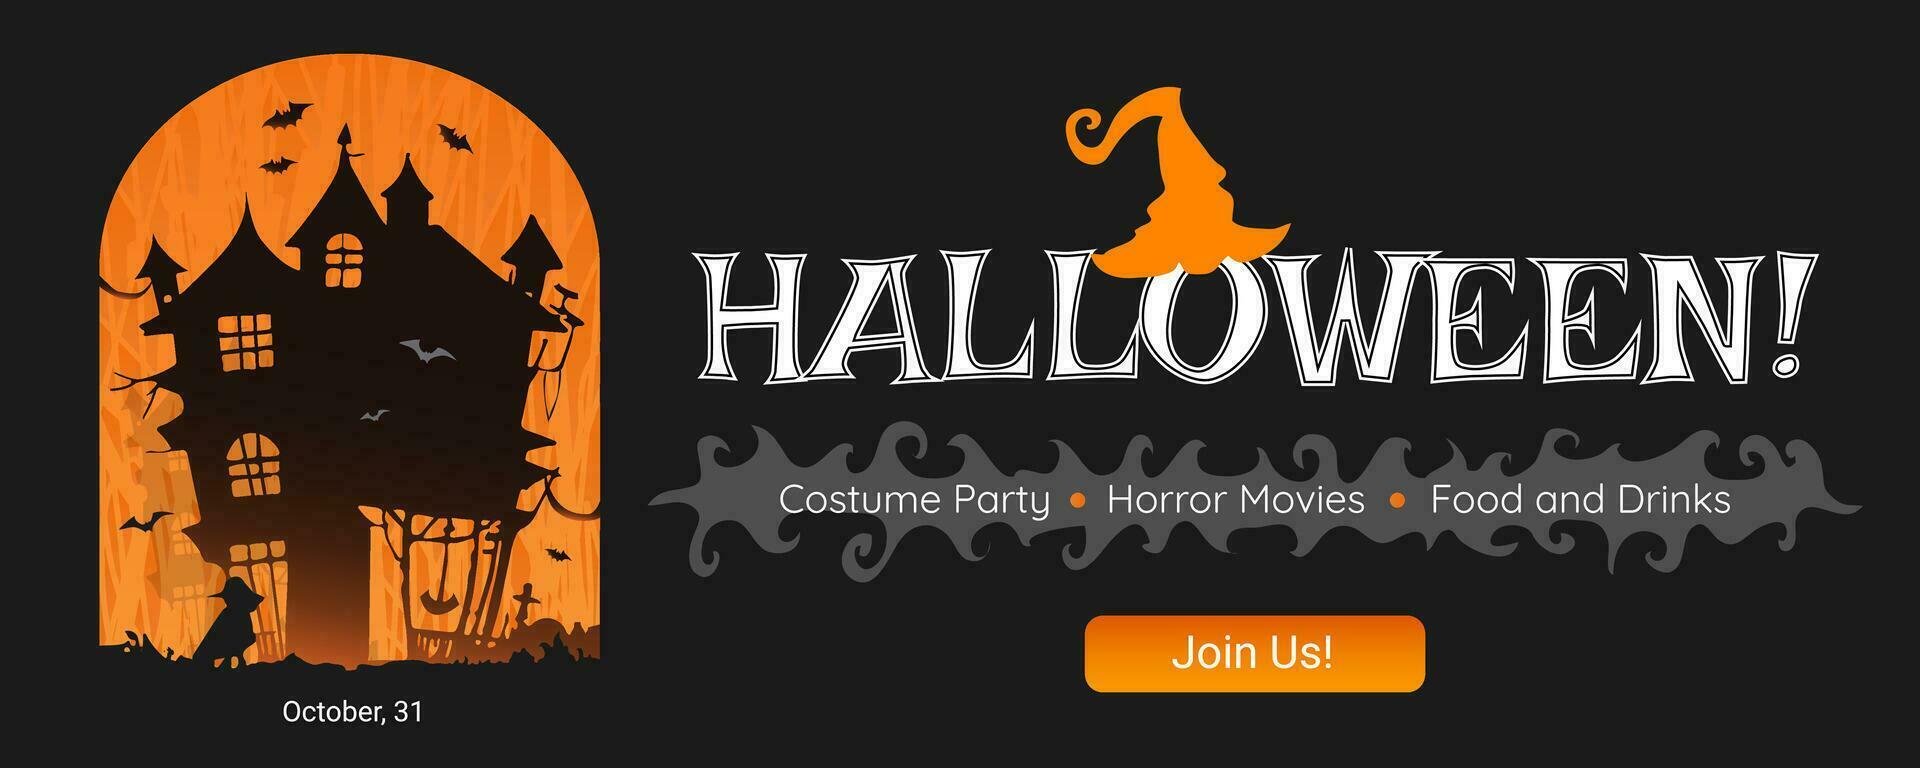 halloween fest webb baner, meddela, inbjudan, vektor illustration för en läskigt säsong, hälsning med halloween, internet baner.